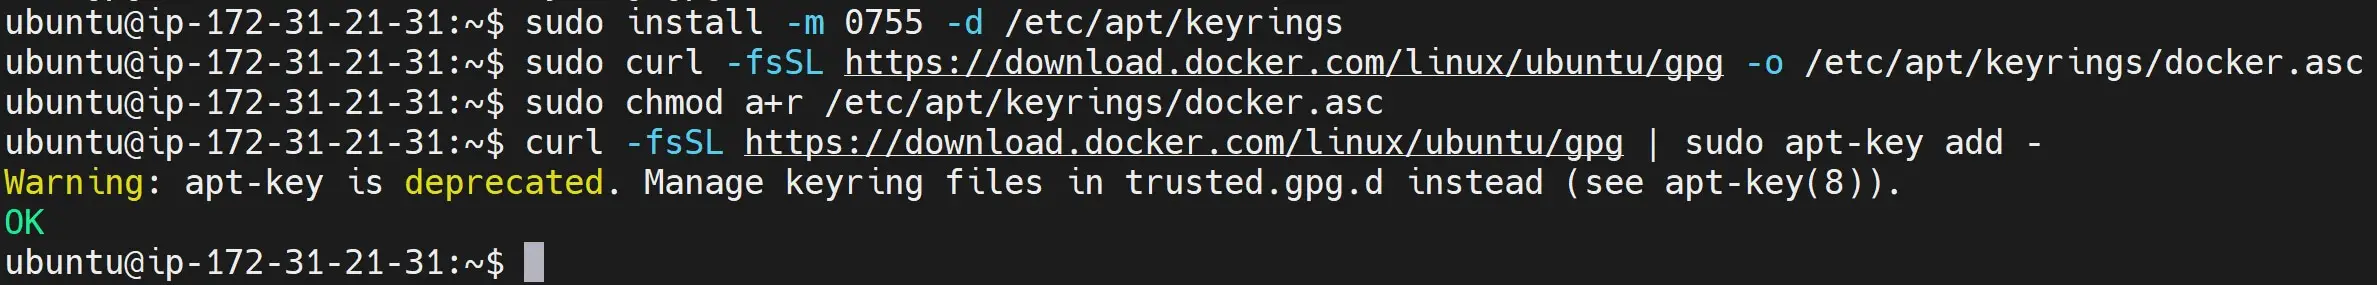 Installing Docker For Portainer on Ubuntu